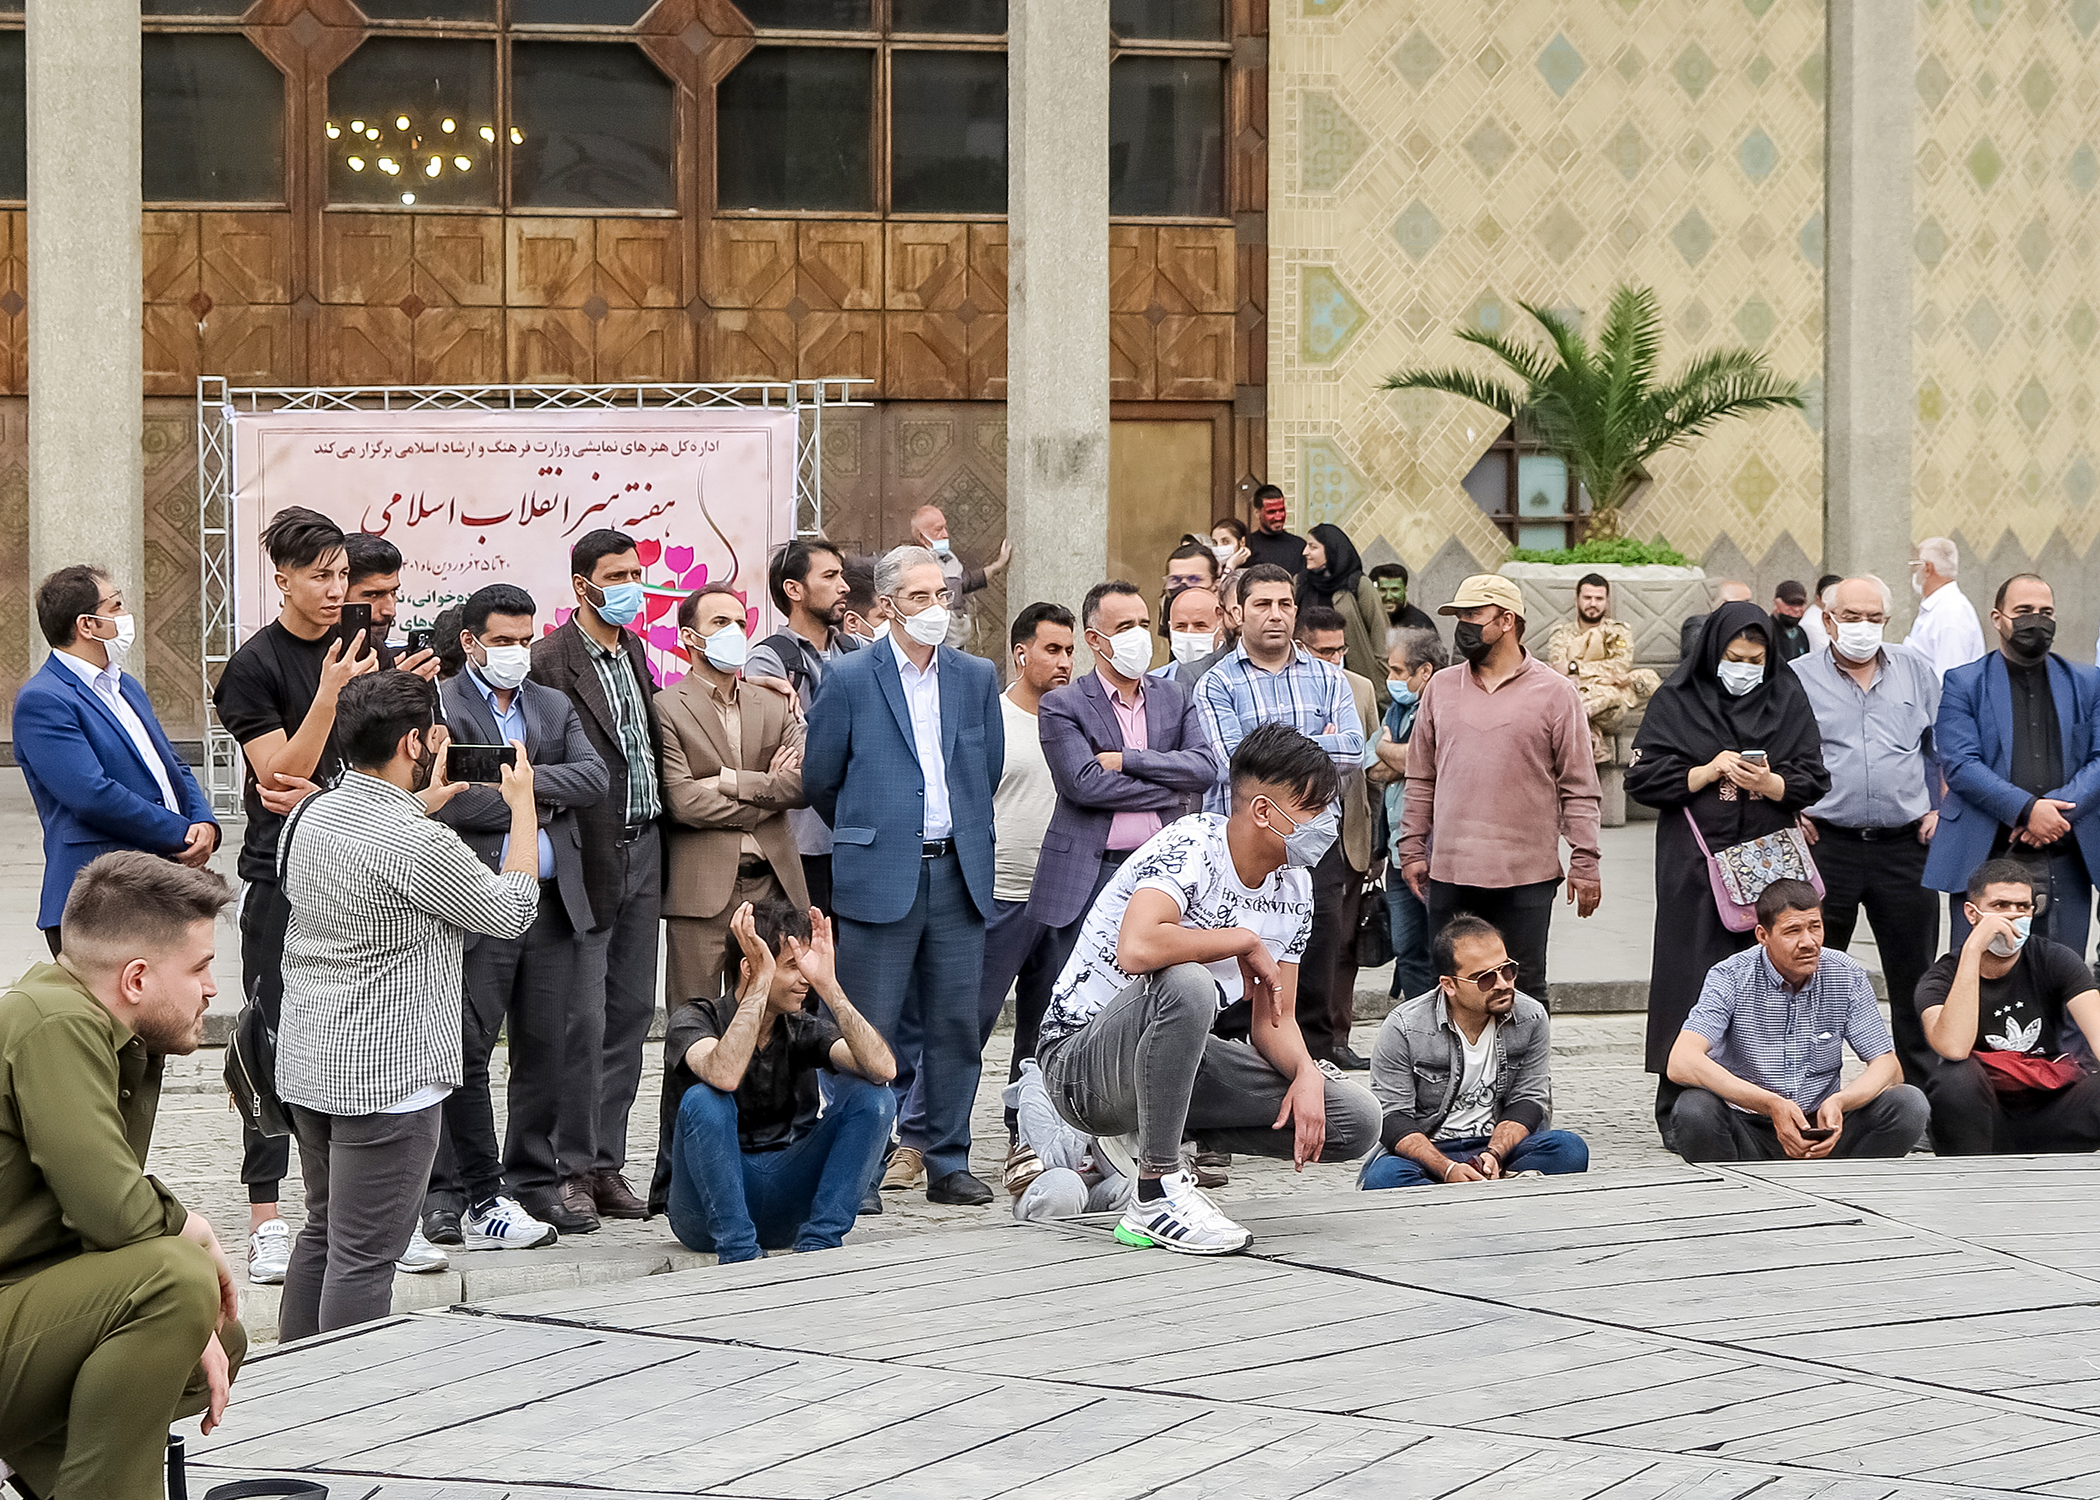 در آخرین روز برنامه ها صورت گرفت؛

حضور معاون امور هنری وزیر ارشاد در جراهای نمایشی هفته هنر انقلاب اسلامی